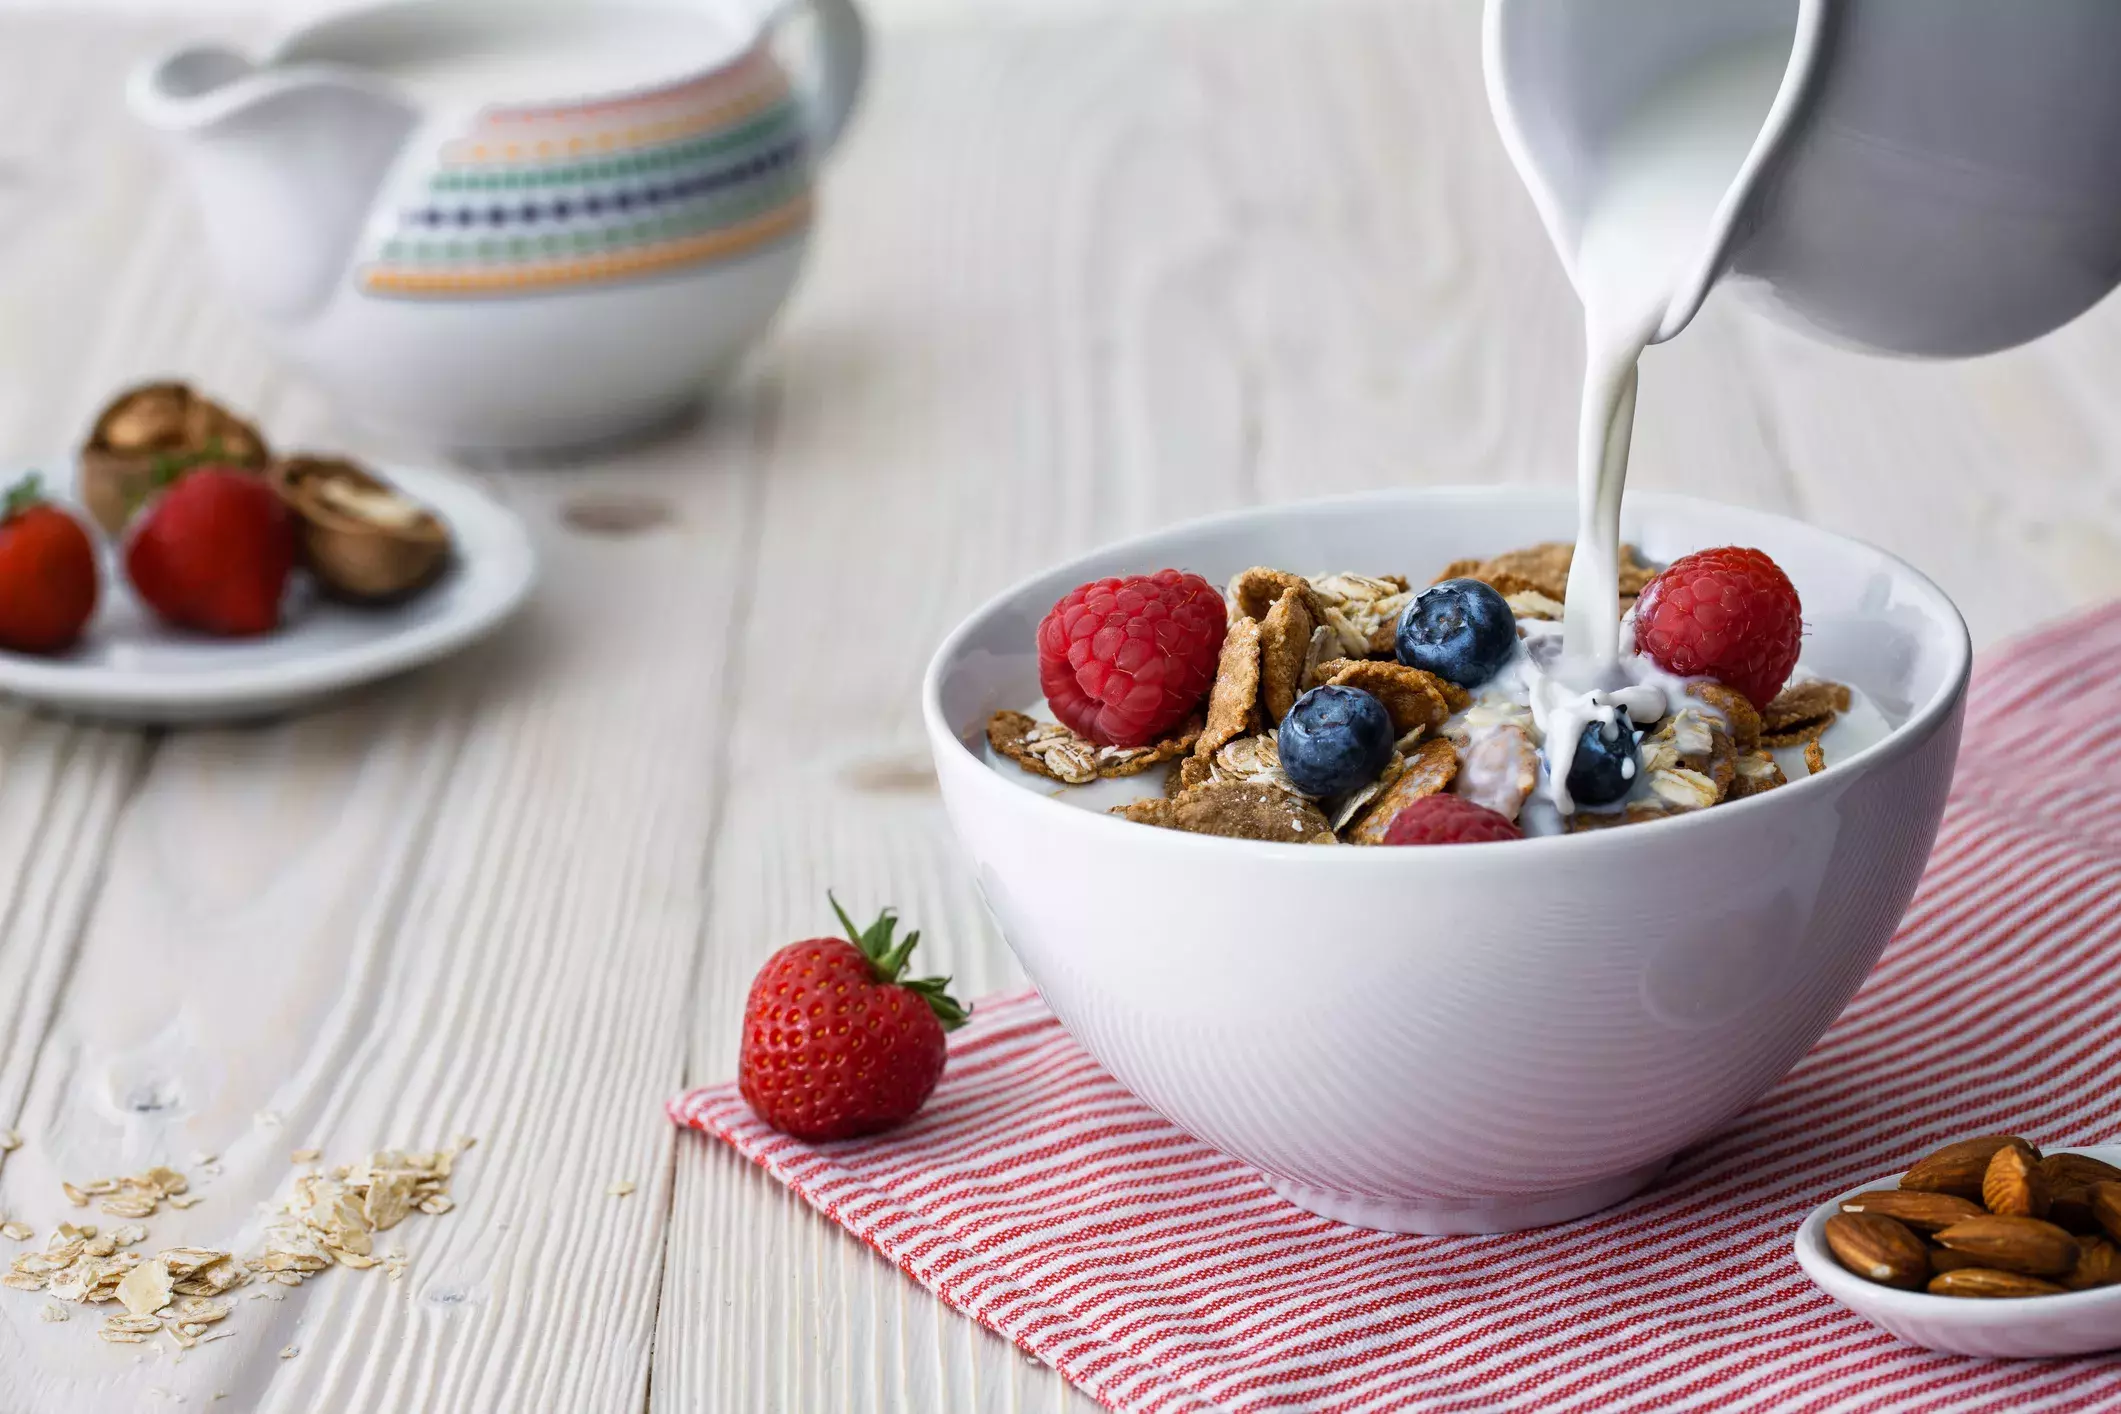 朝食に冷たいシリアル食べてない 代謝アップに効果的な食べ方のコツ ローリエプレス